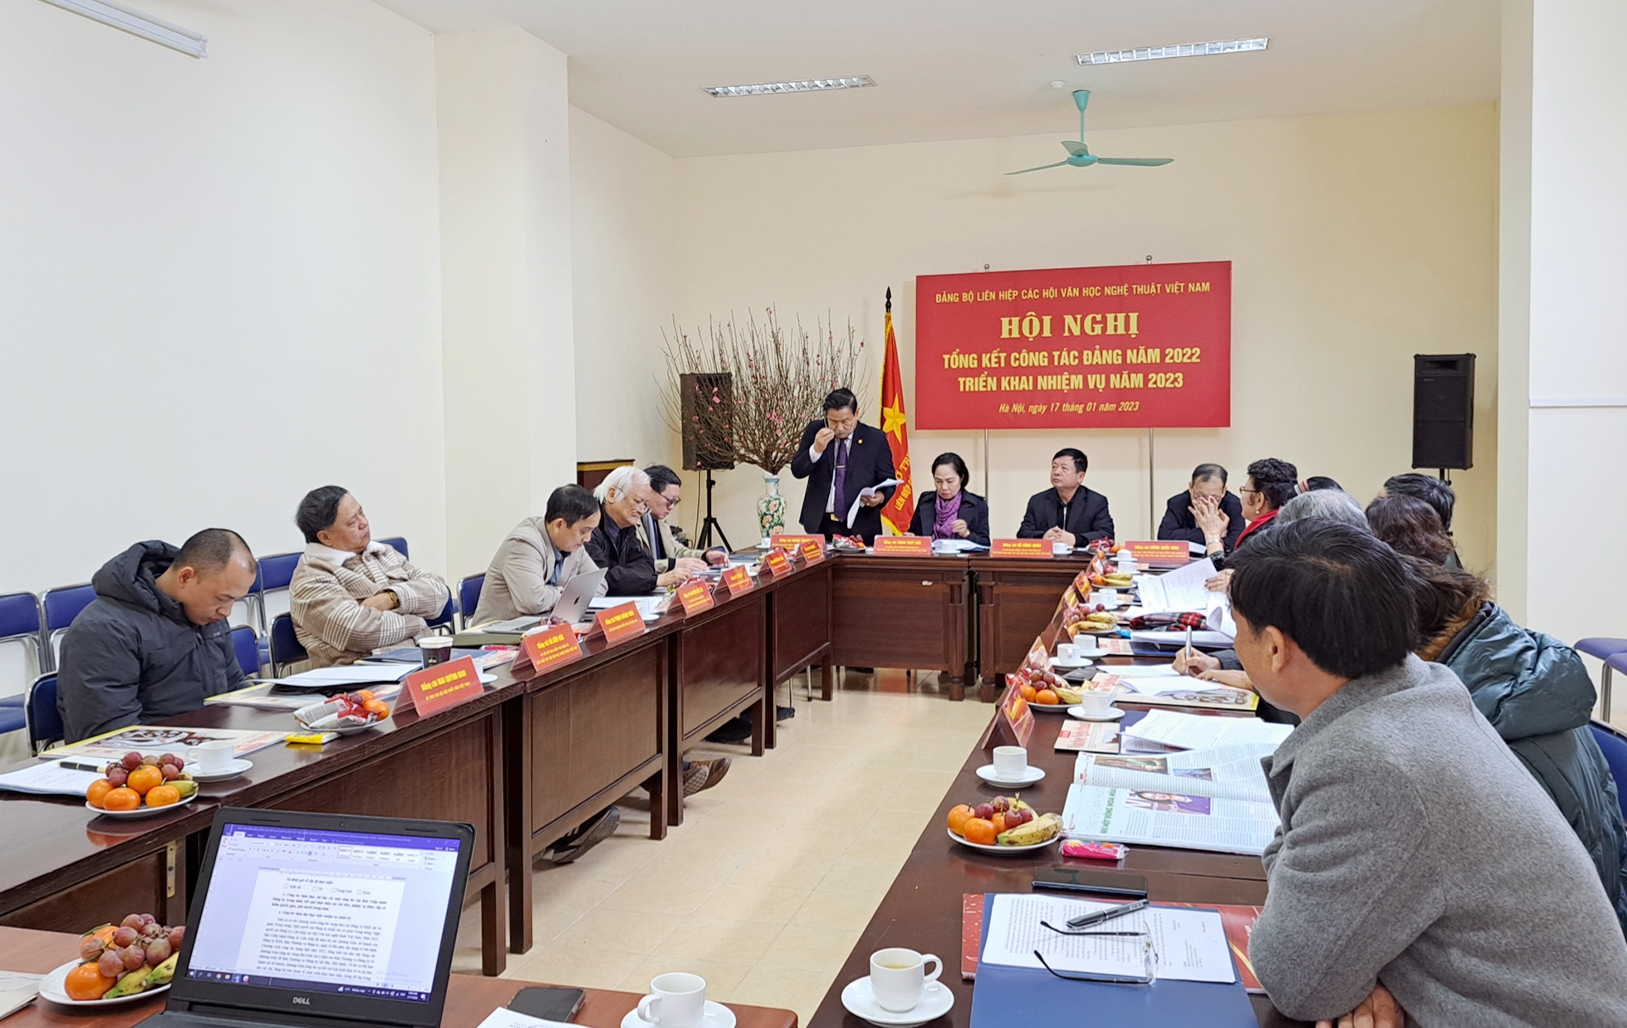 Nhìn lại công tác Đảng năm 2022 của Đảng bộ Liên hiệp các Hội Văn học nghệ thuật Việt Nam - 2